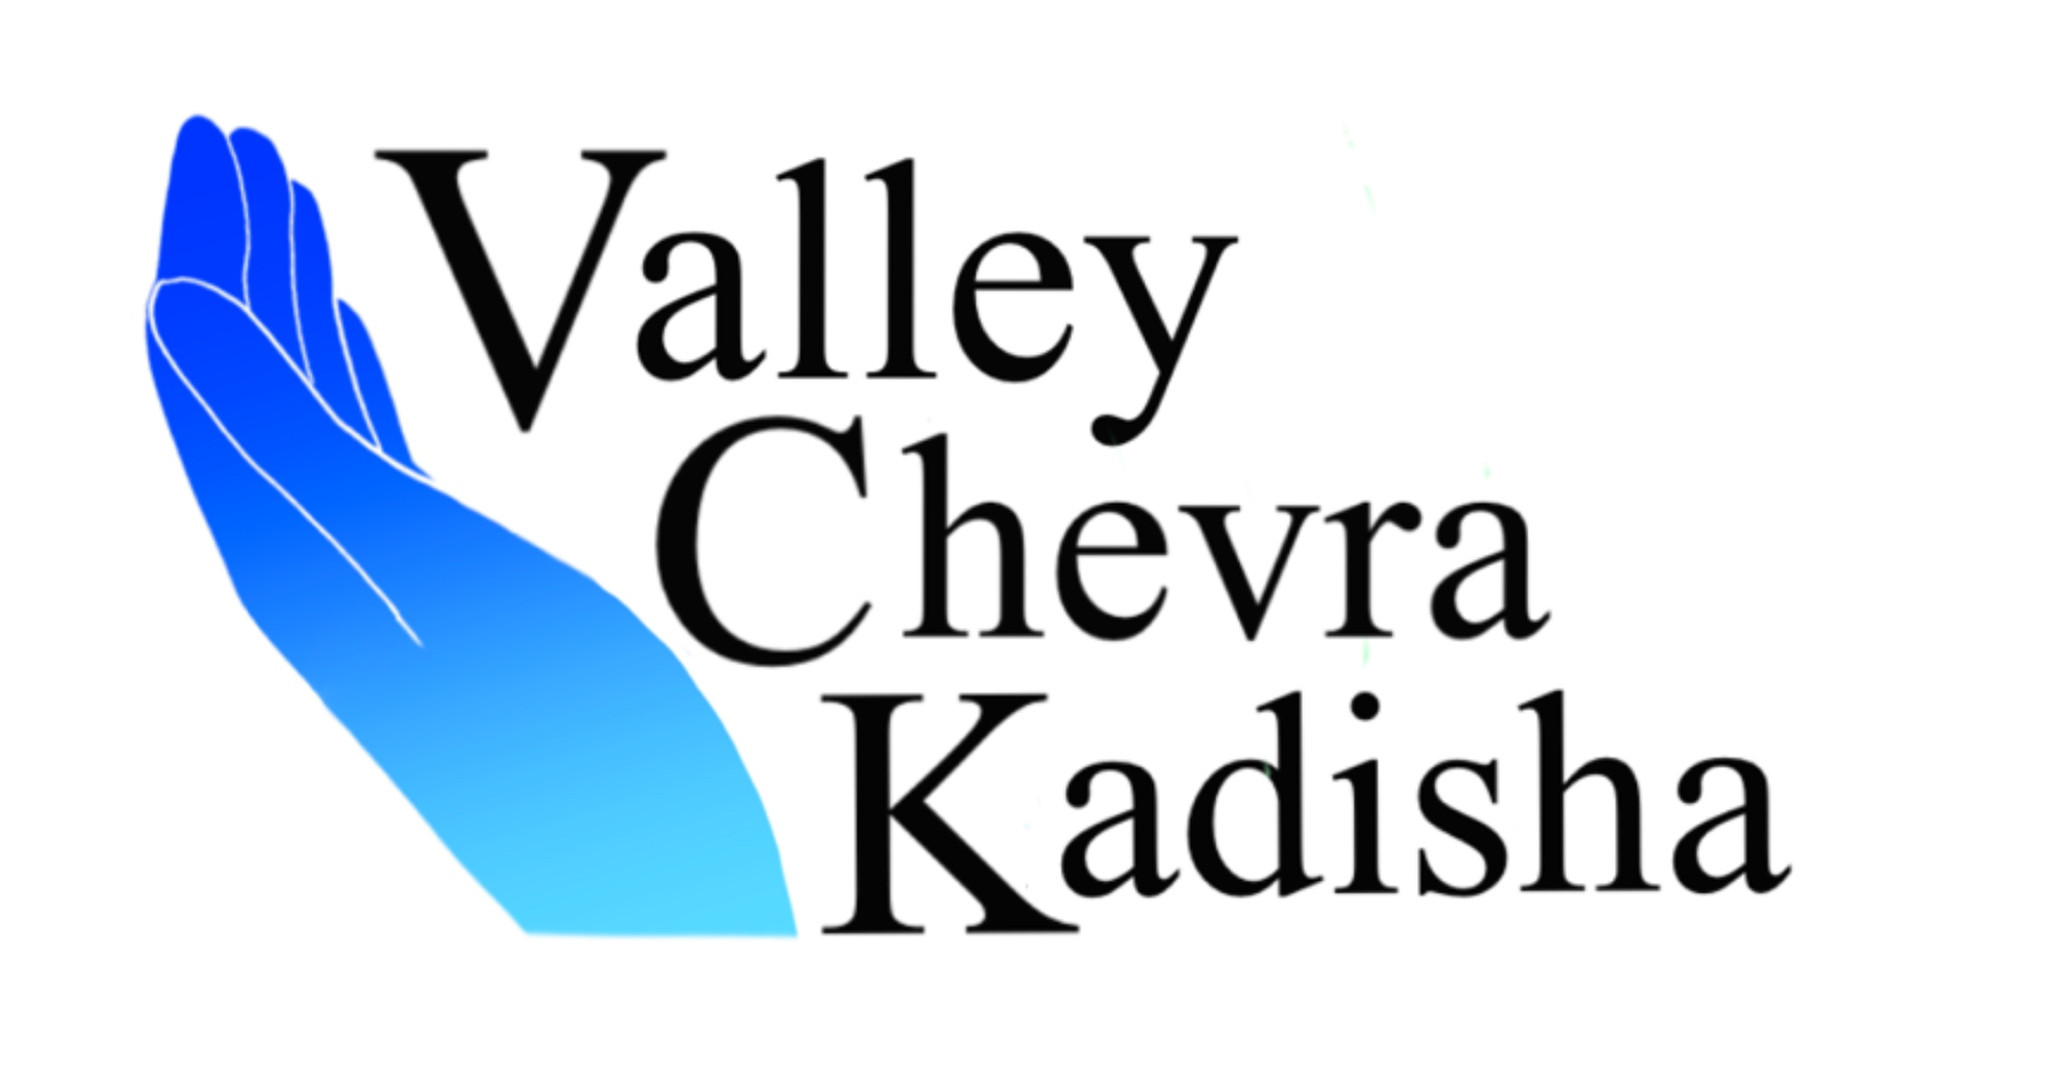 valley chevra kadisha logo<br />
